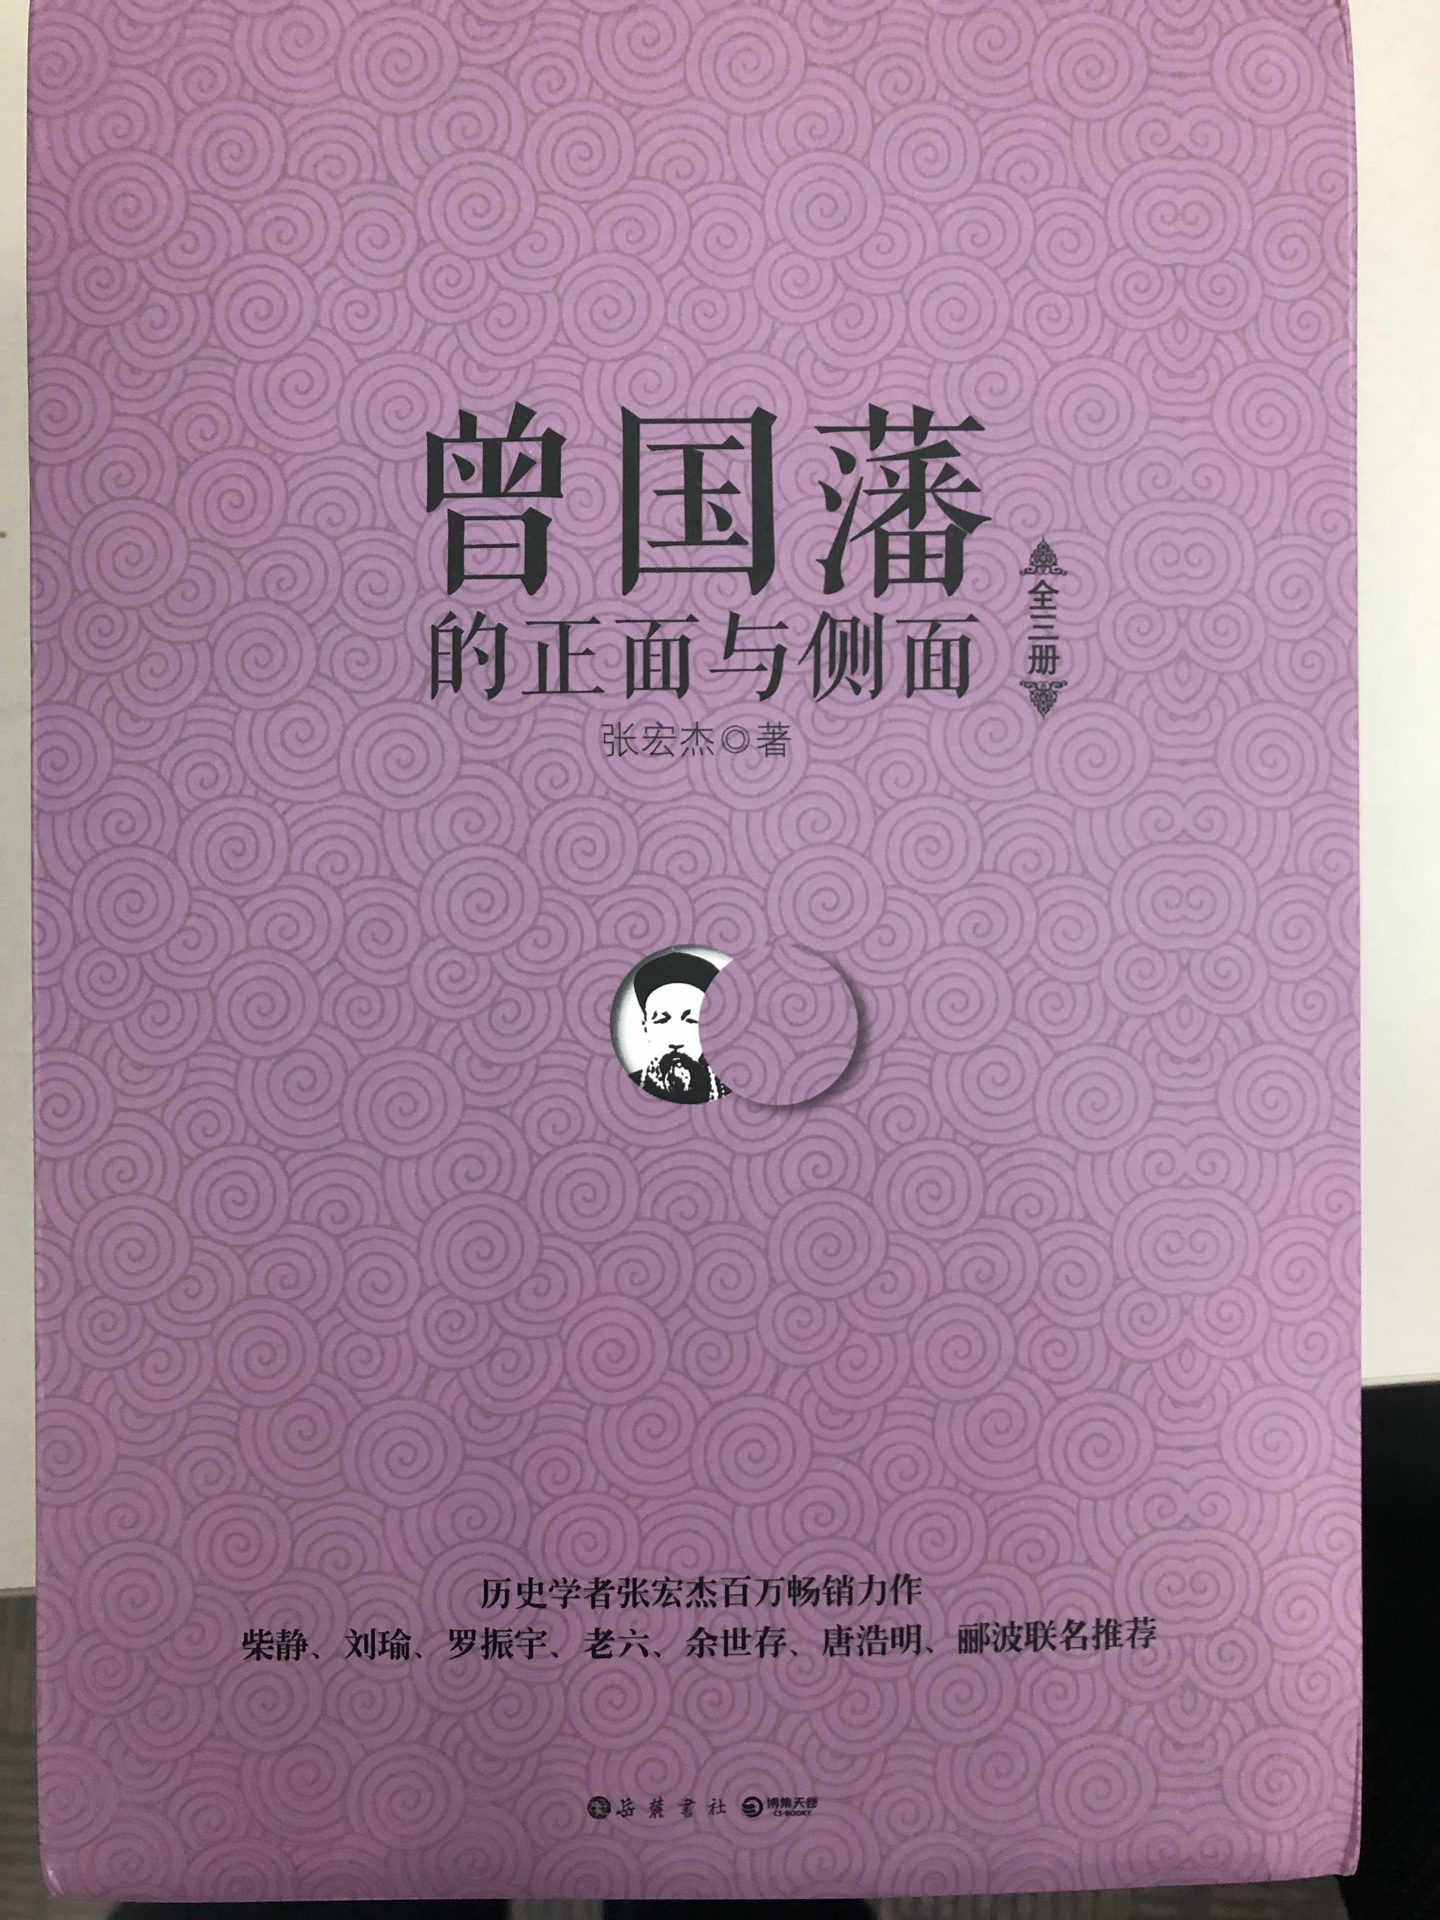 第二天收到，速度超快，已经迫不及待的打开了，年度最厚的一本书，题目非常精准，中国特色的生存哲学！